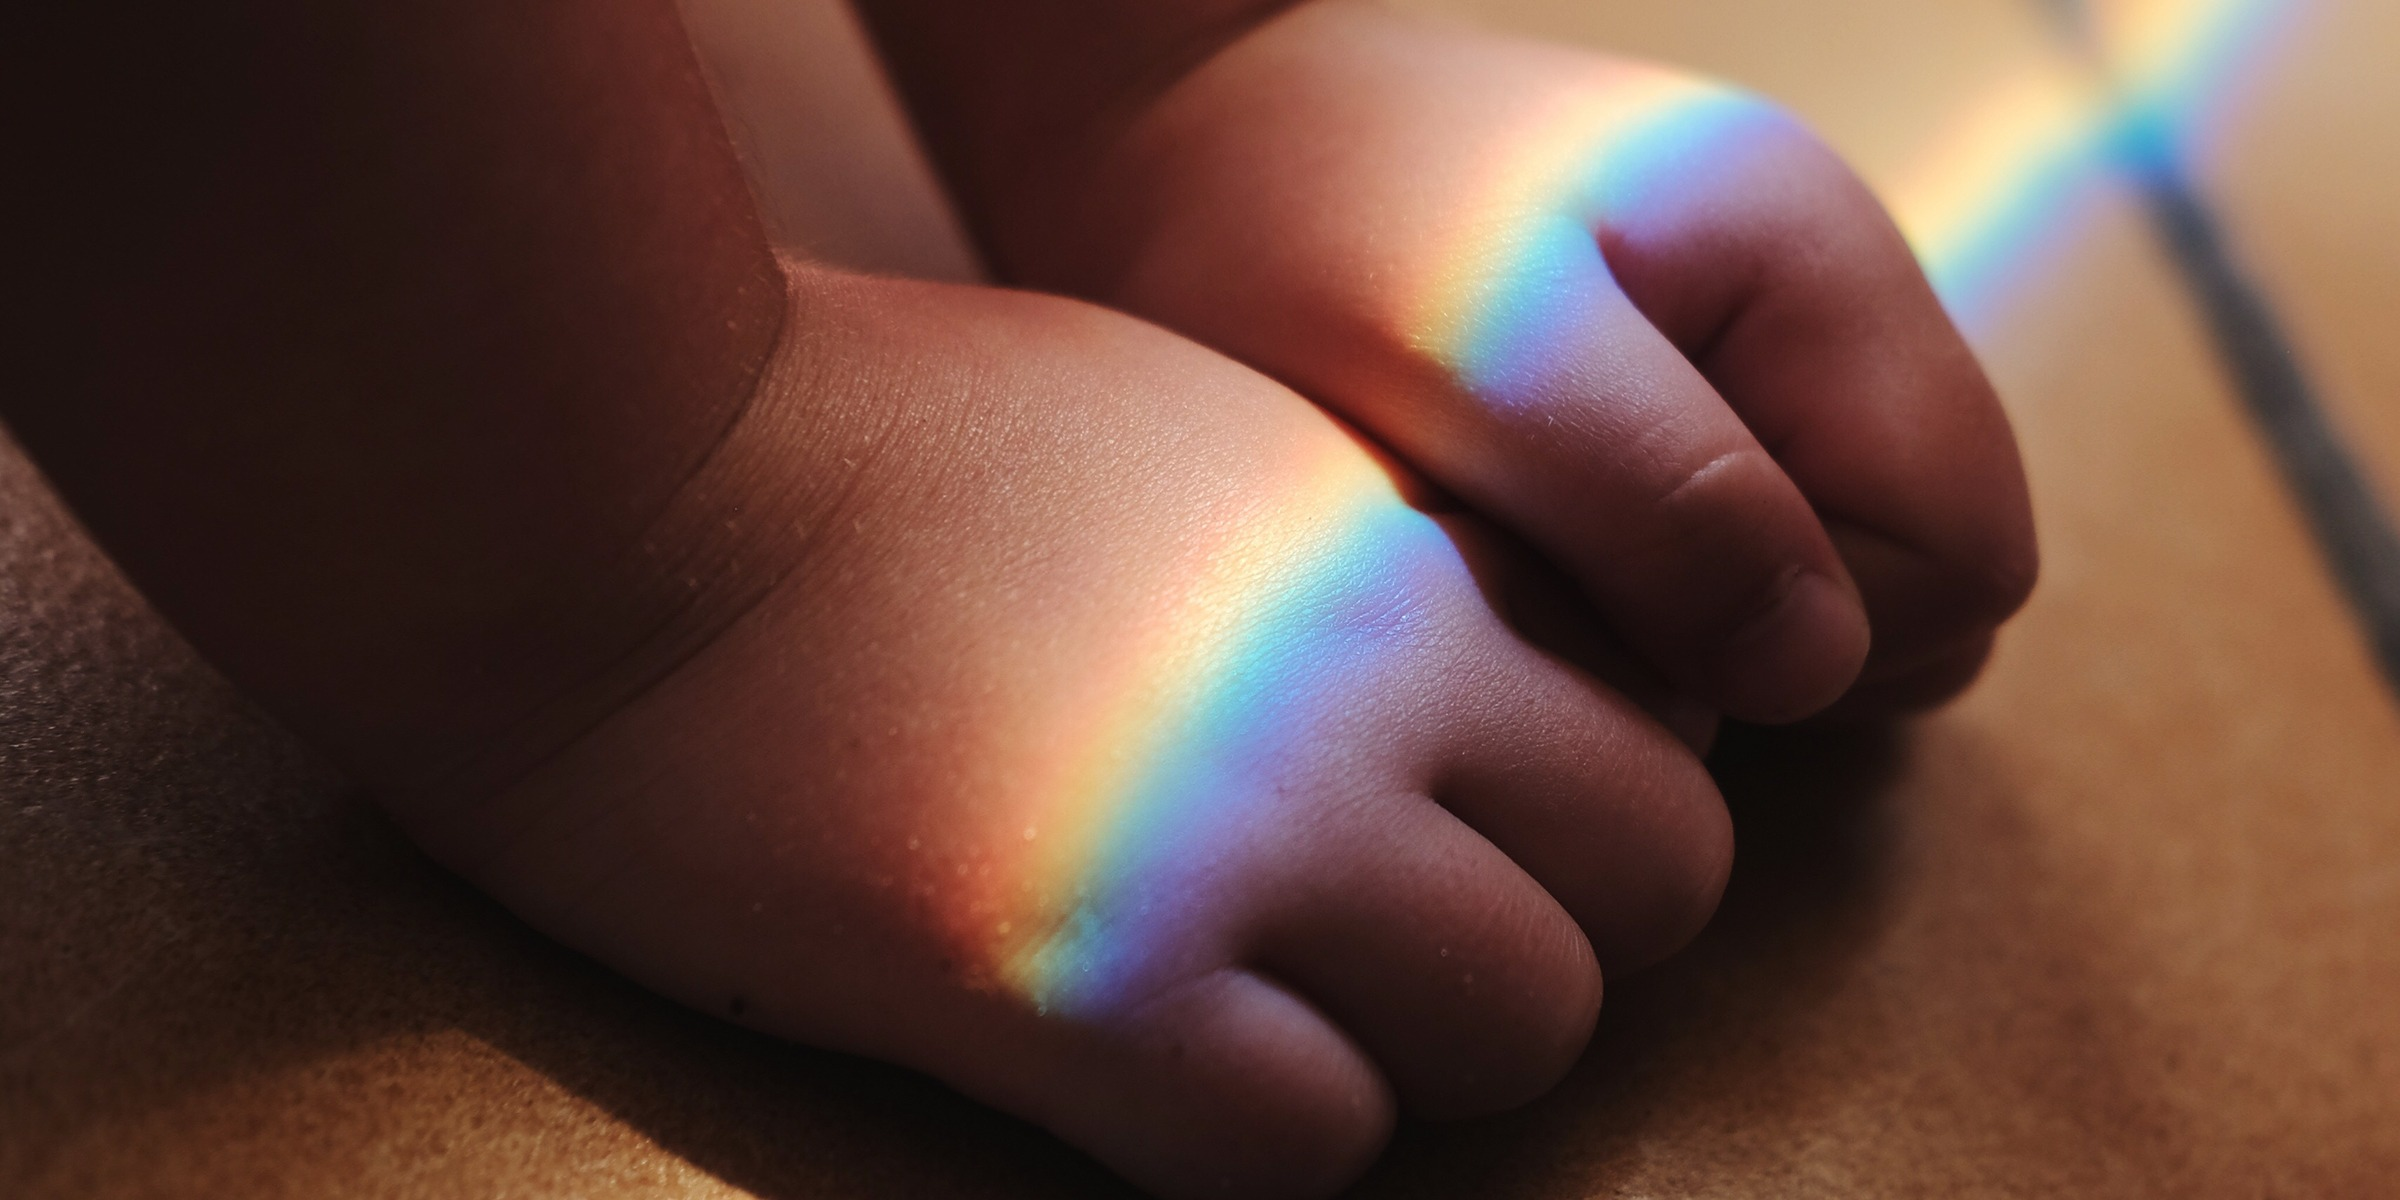 rainbow baby marks, rainbow babies, miracle babies